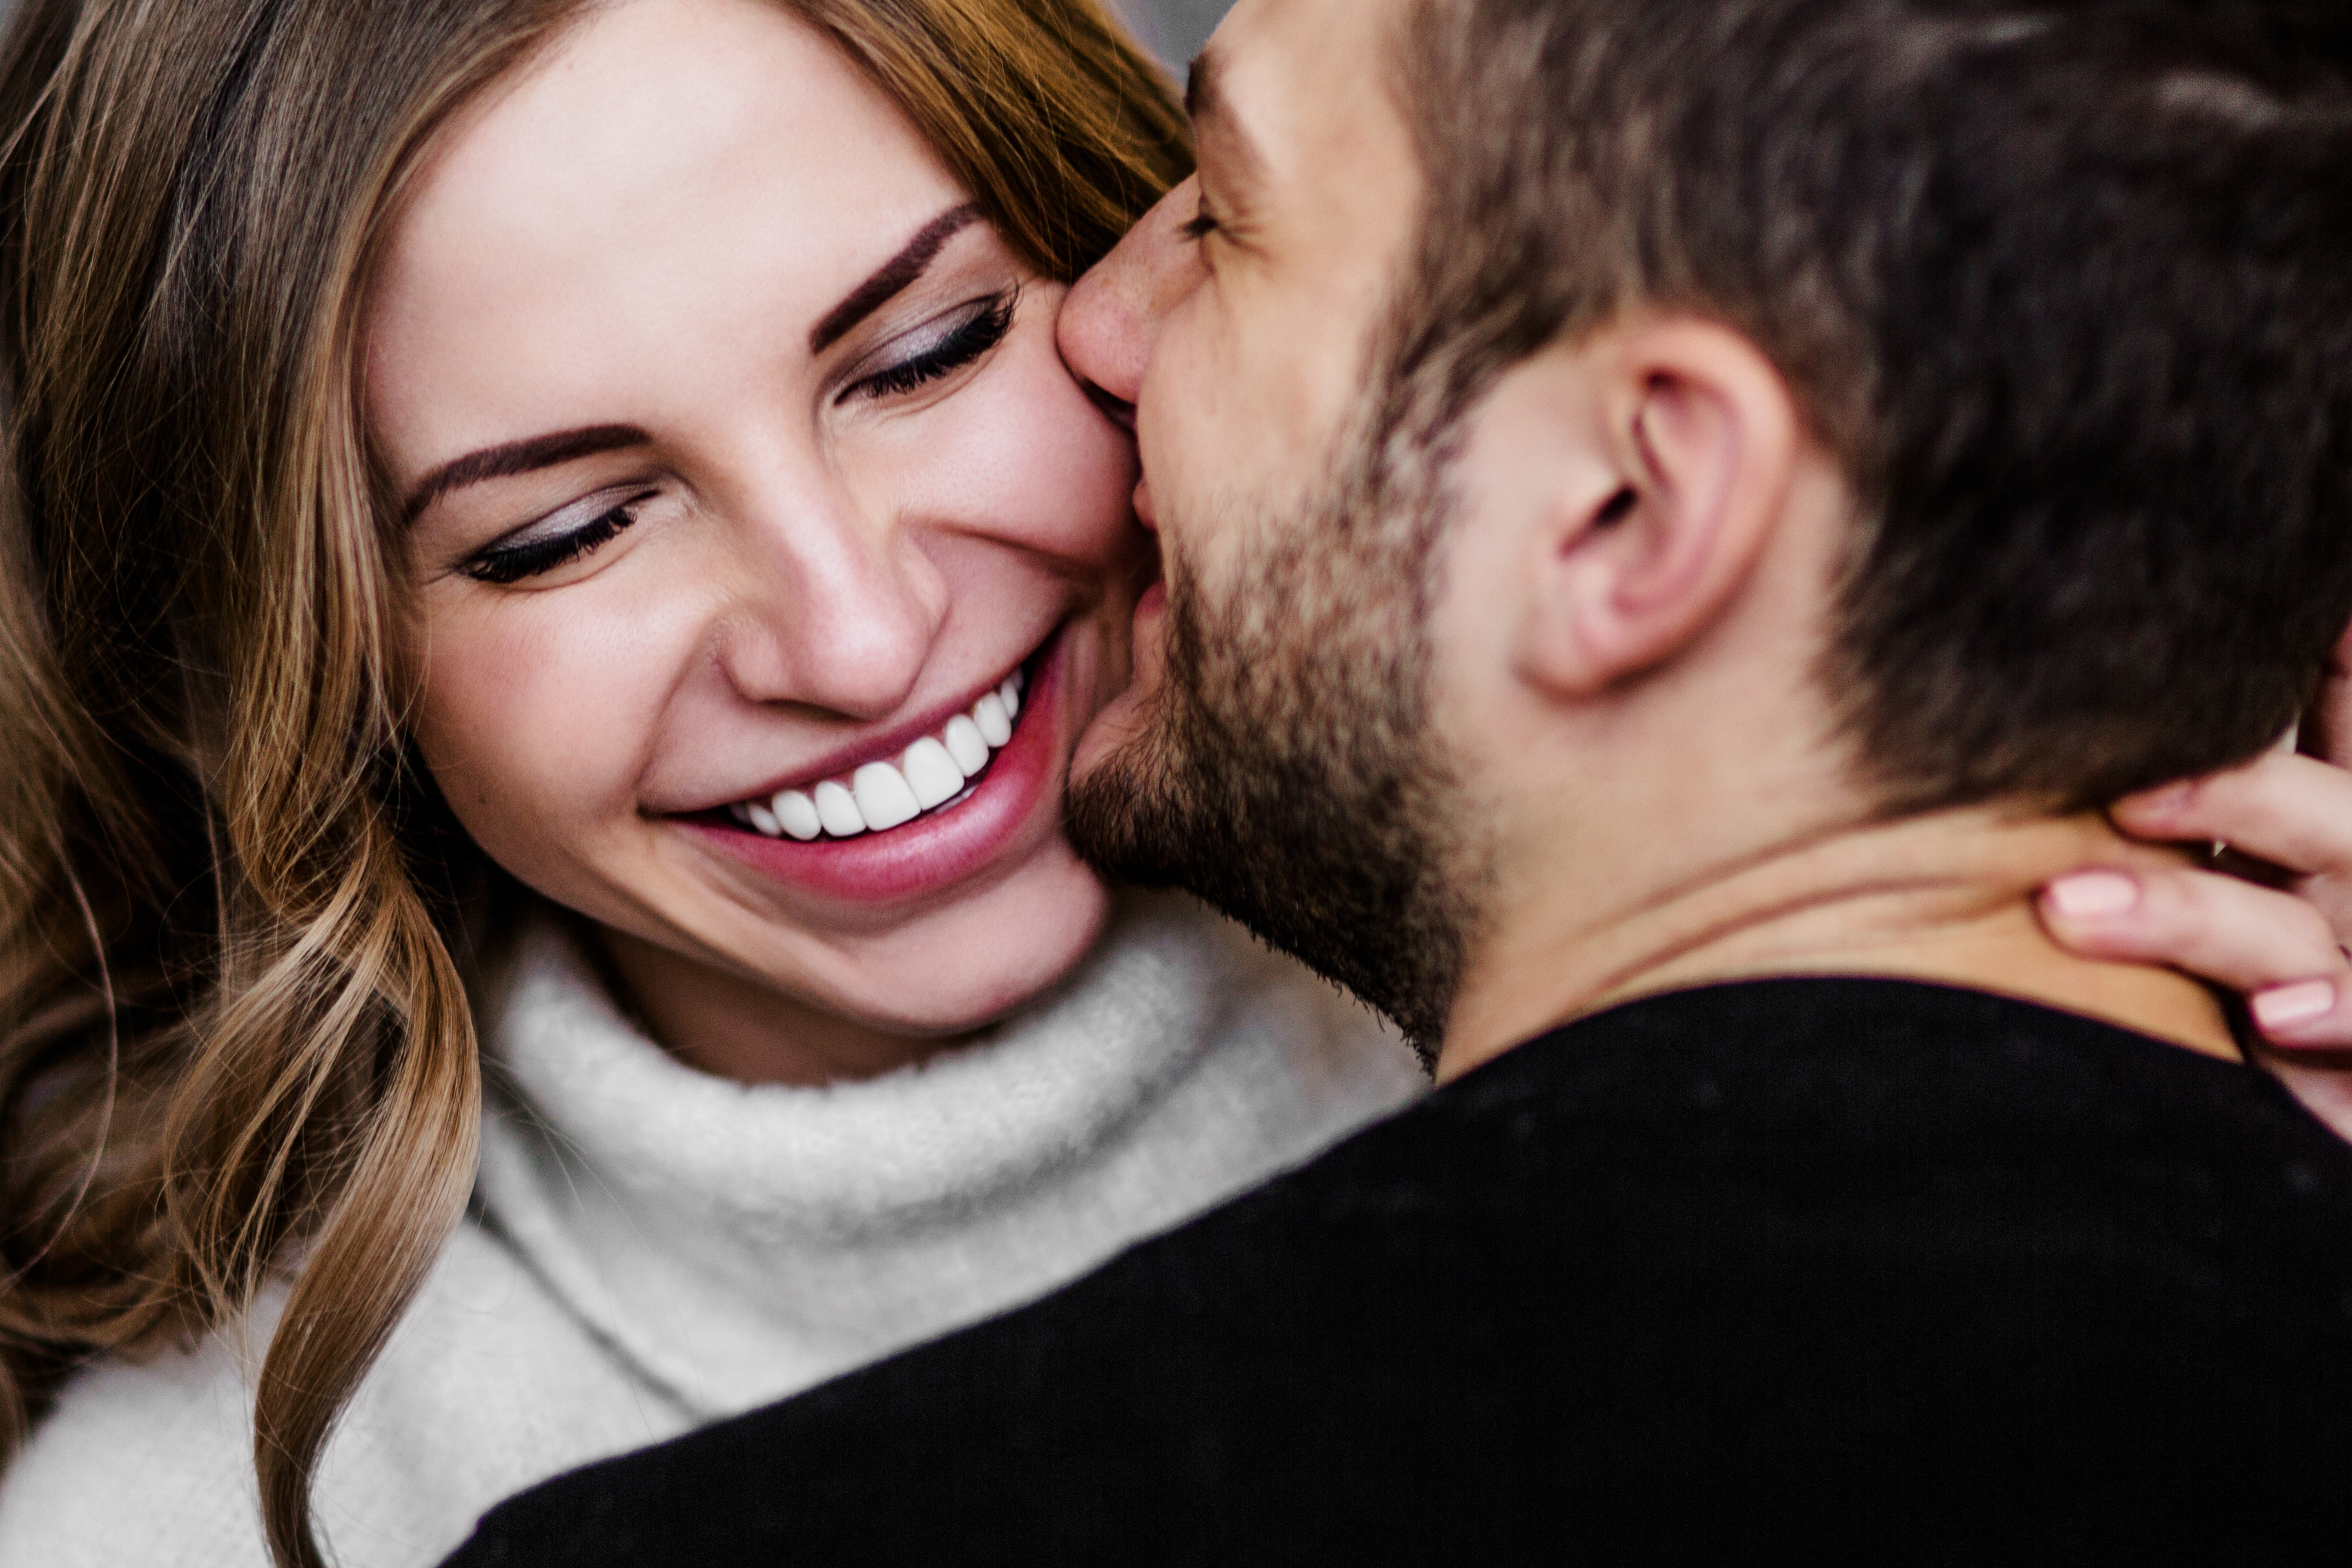 Ein Mann küsst seine lächelnde Partnerin auf die Wange | Quelle: Shutterstock